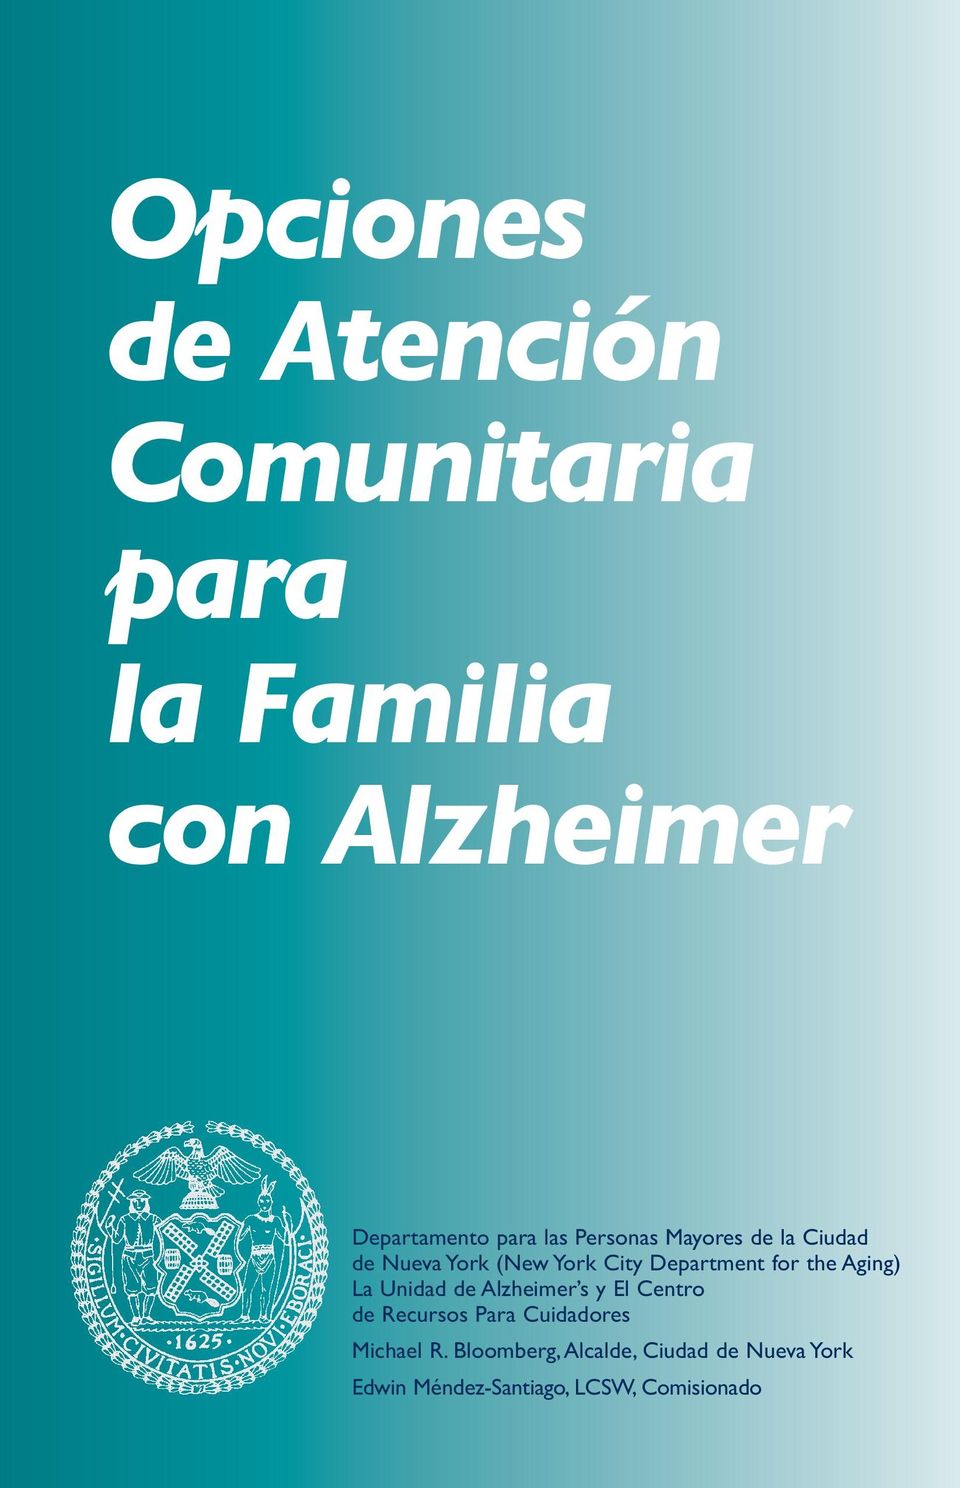 Aging) La Unidad de Alzheimer s y El Centro de Recursos Para Cuidadores Michael R.